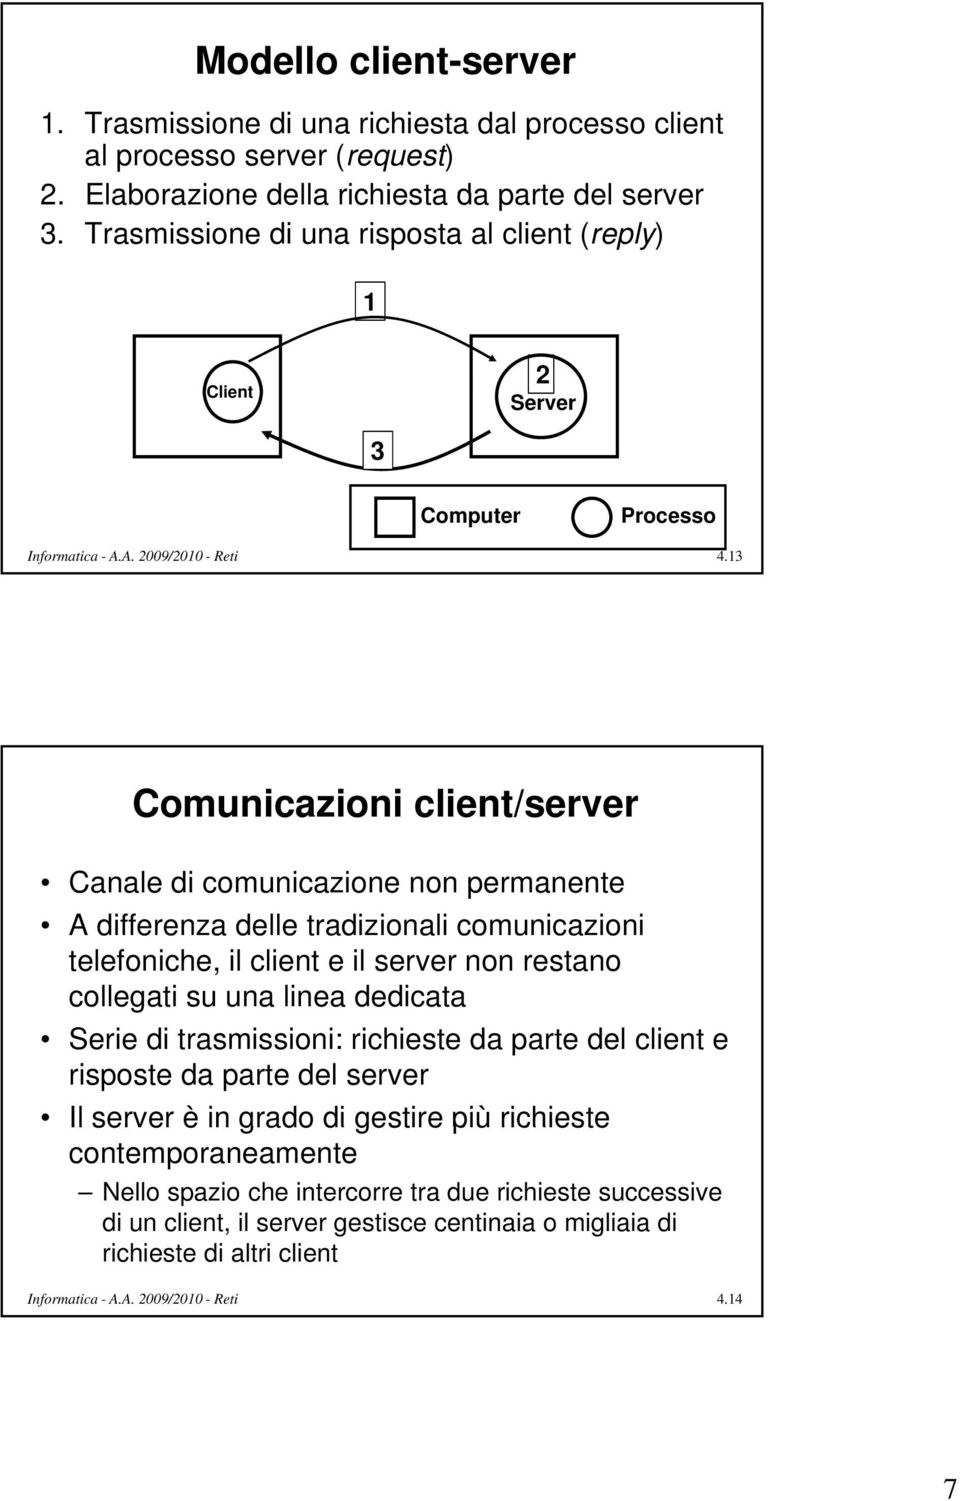 13 Comunicazioni client/server Canale di comunicazione non permanente A differenza delle tradizionali comunicazioni telefoniche, il client e il server non restano collegati su una